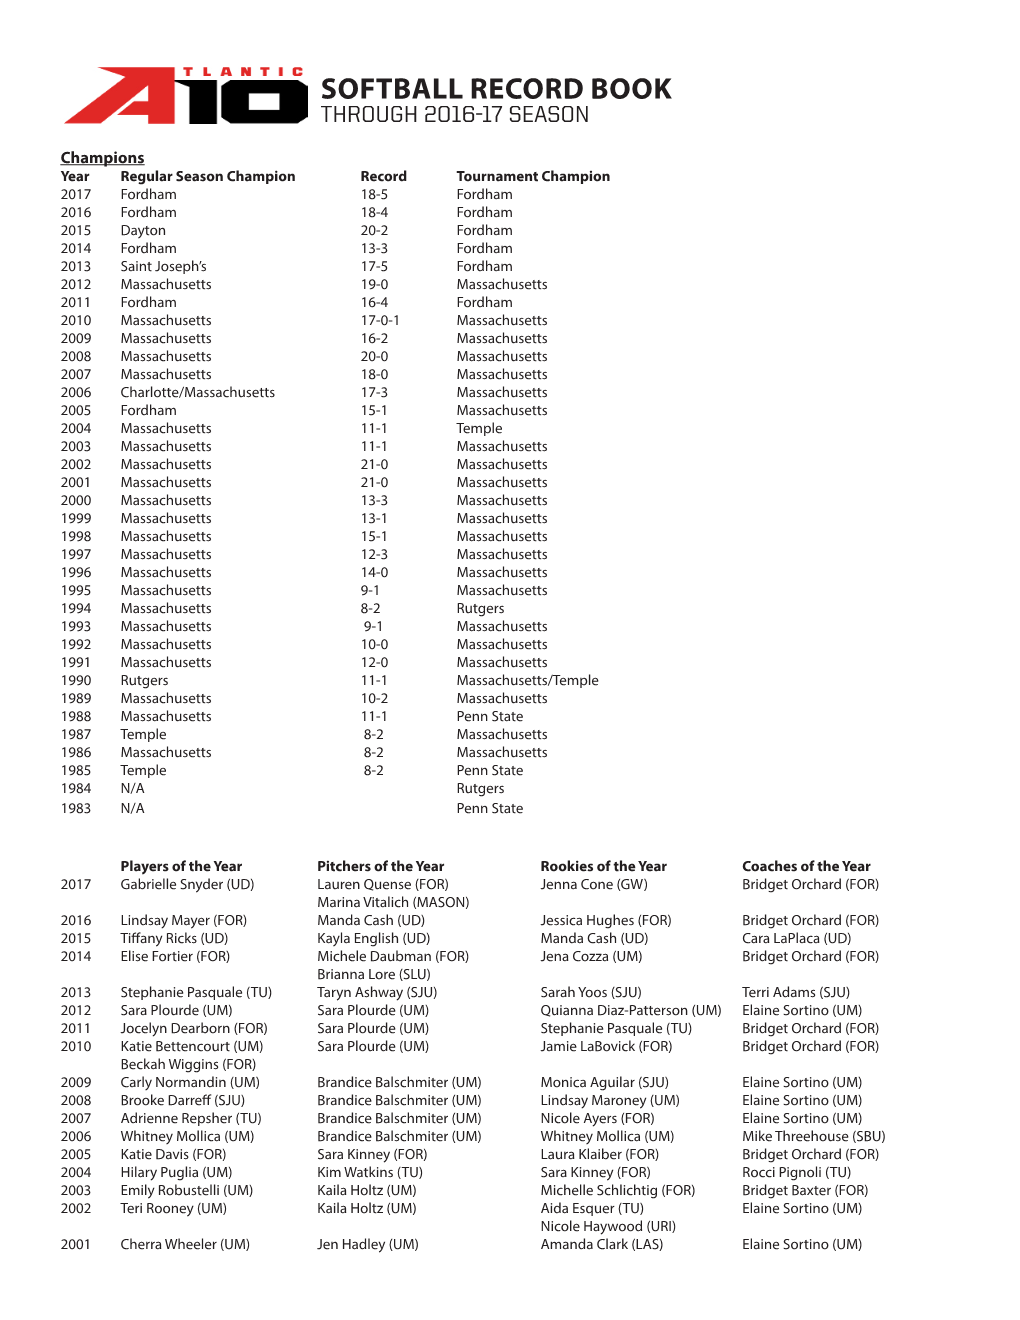 Softball Record Book Through 2016-17 Season